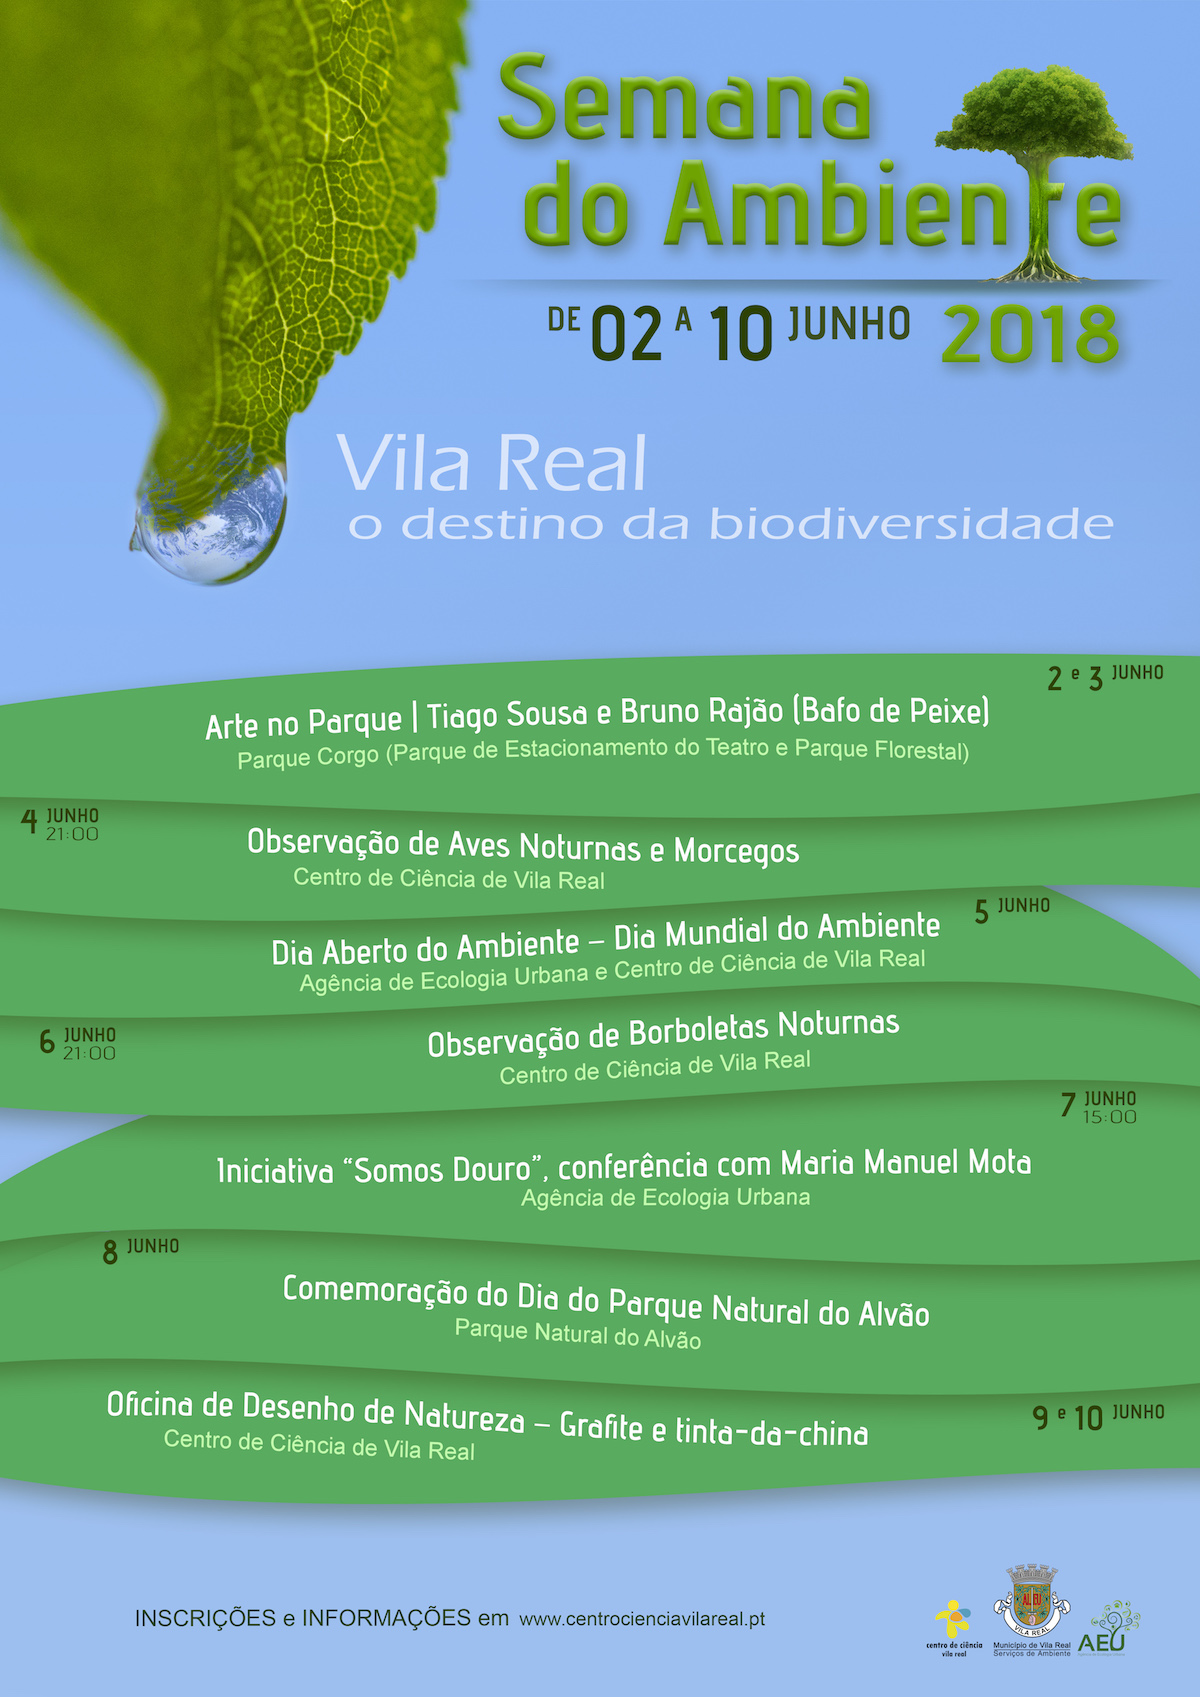 Vila Real celebra mais uma Semana do Ambiente entre 2 e 10 de junho